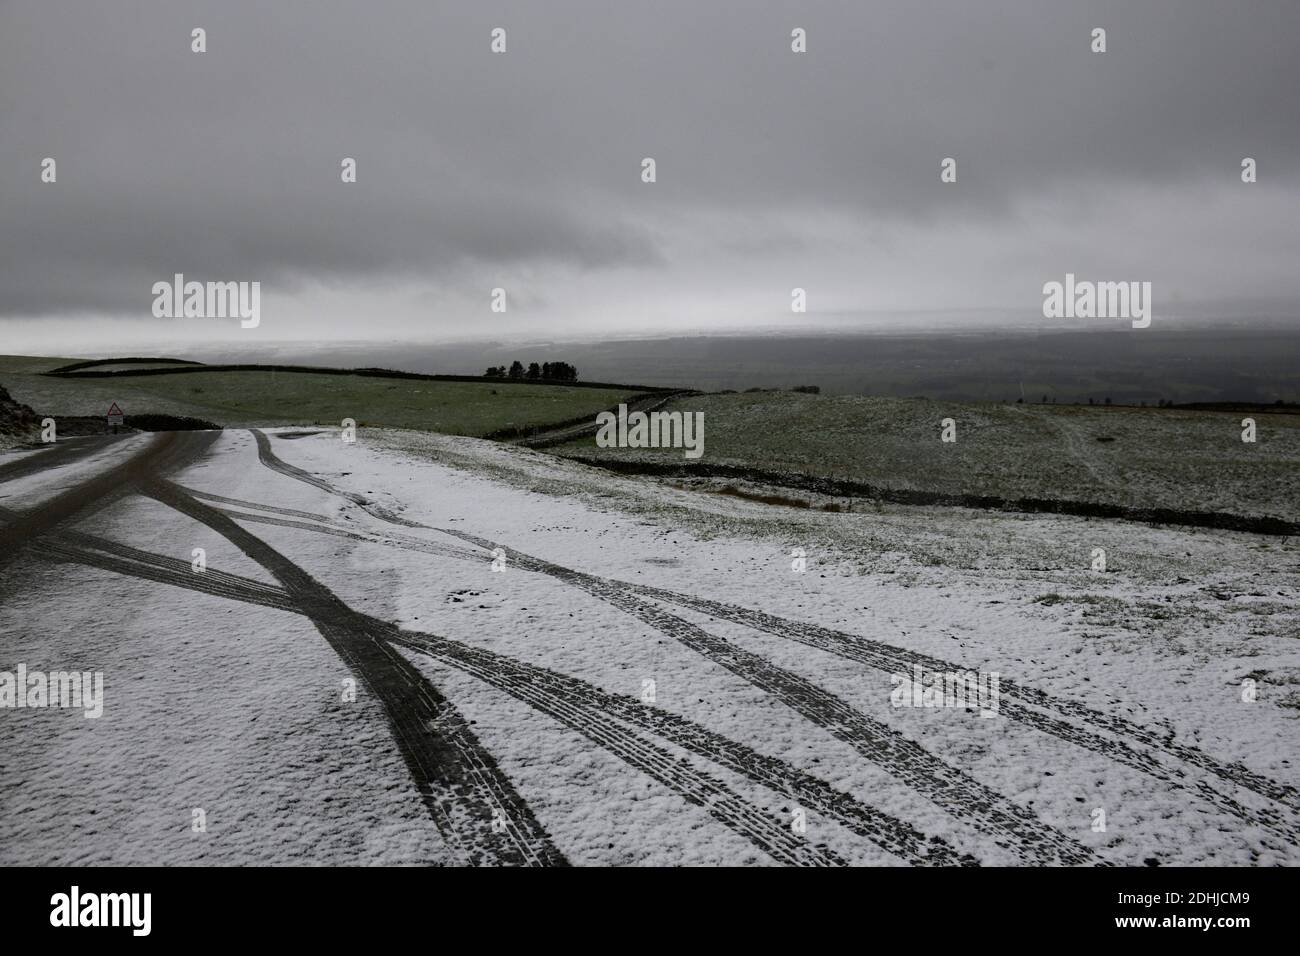 La photo est une scène neigeuse dans les Yorkshire Dales au-dessus de Leyburn. Météo neige hiver neige neige neige neige neige neige neige Banque D'Images